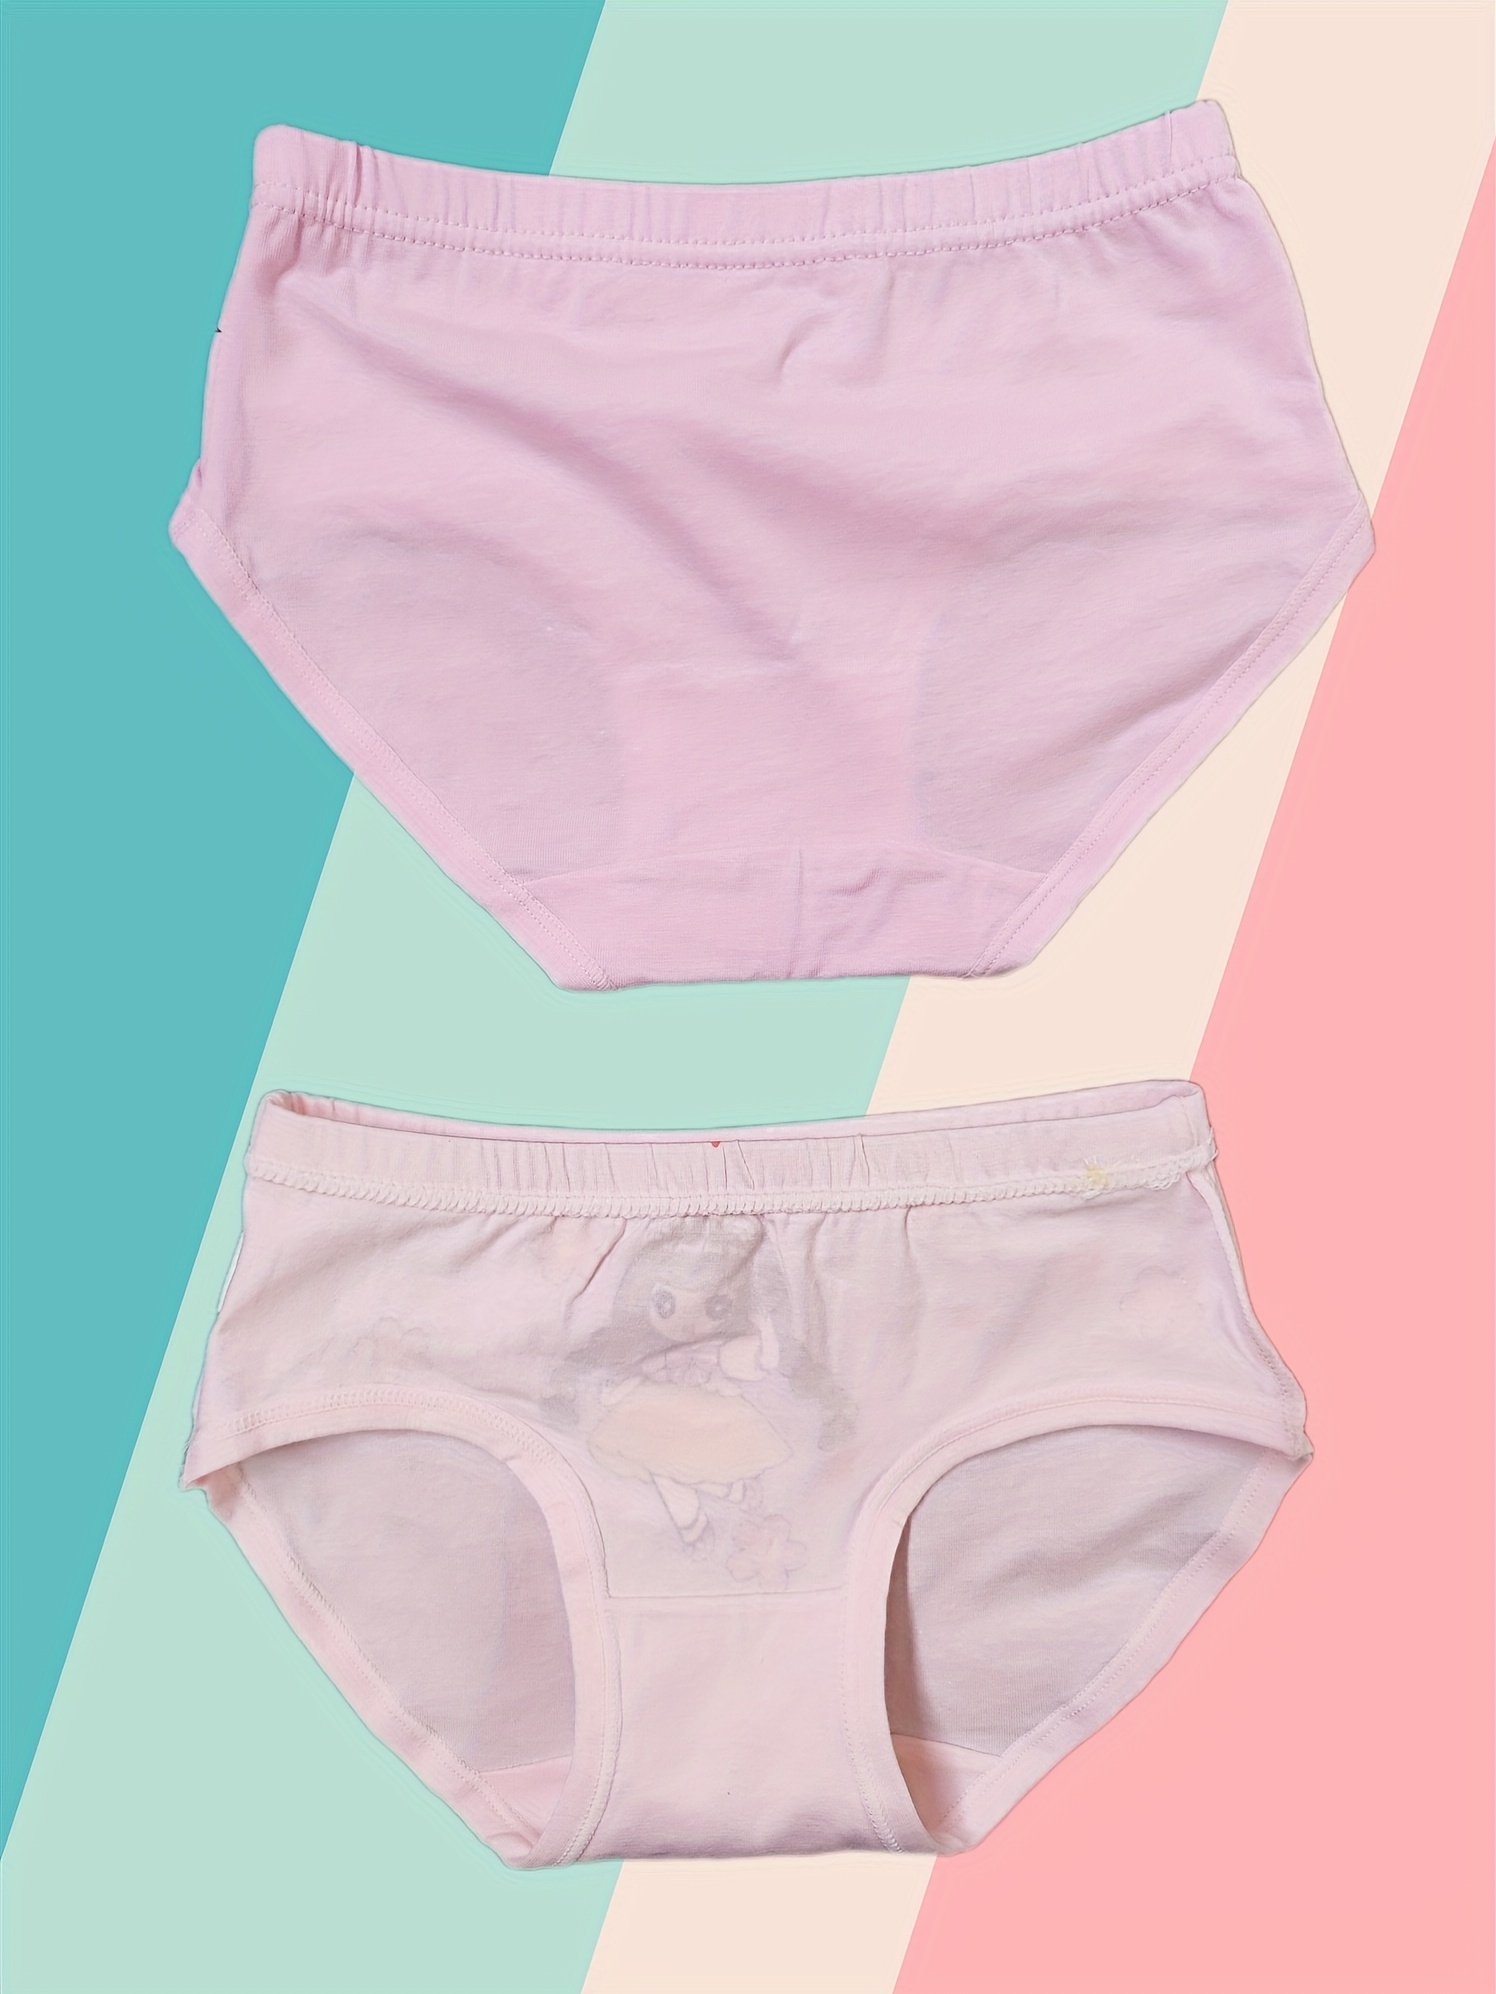 6PCS Little Girls Underwear Undies Briefs Student Girl Cute Cotton Panties  Brief 